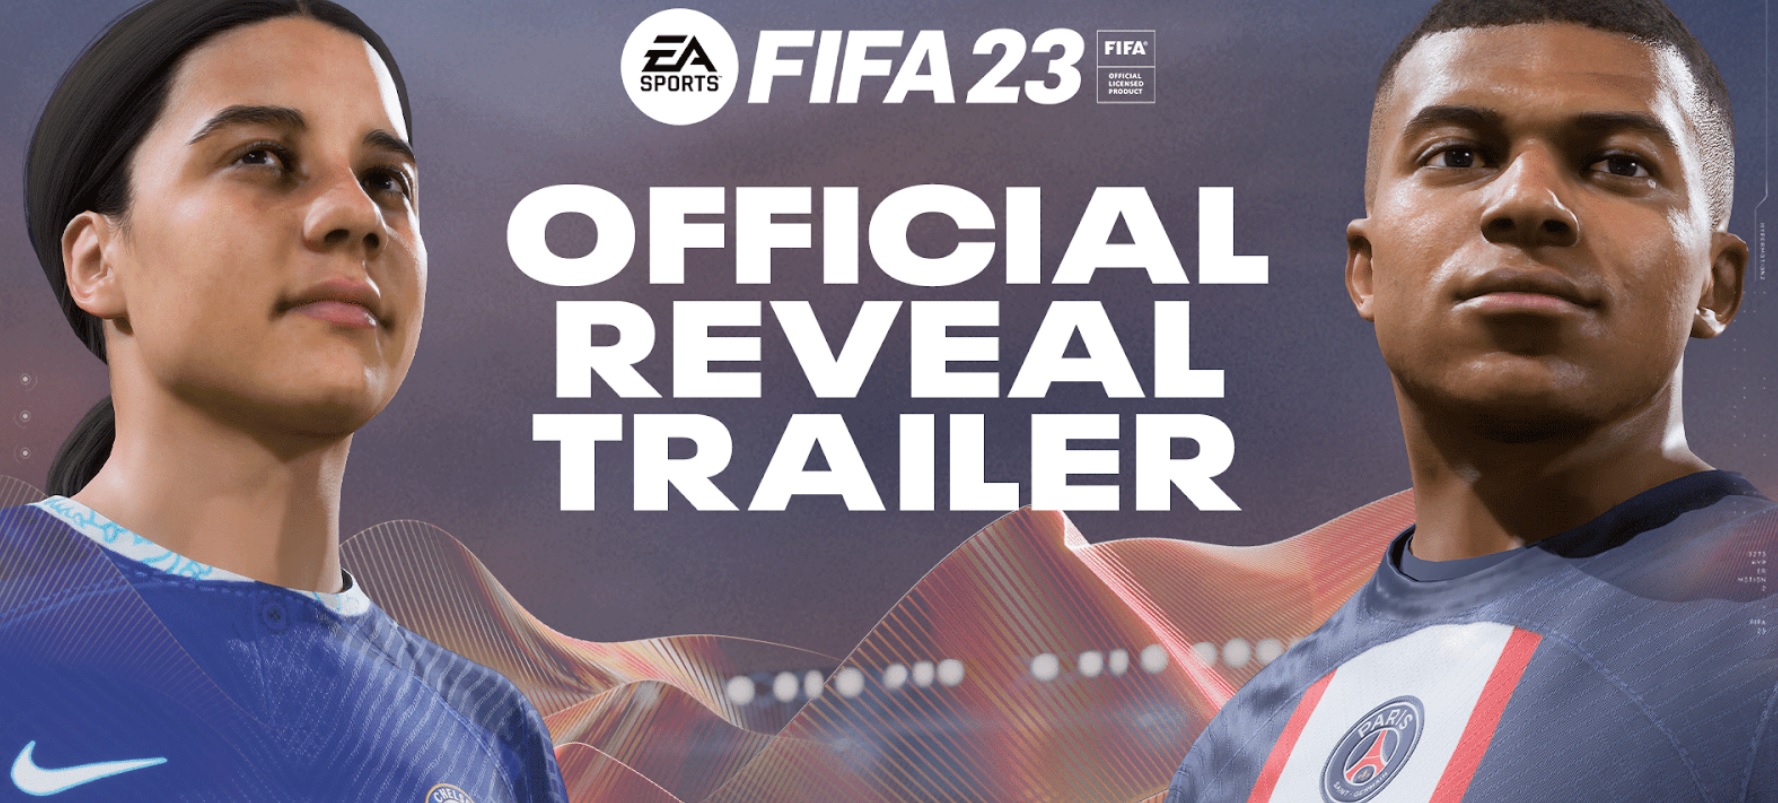 FIFA 23 celebra il gioco più bello del mondo con la tecnologia HyperMotion2